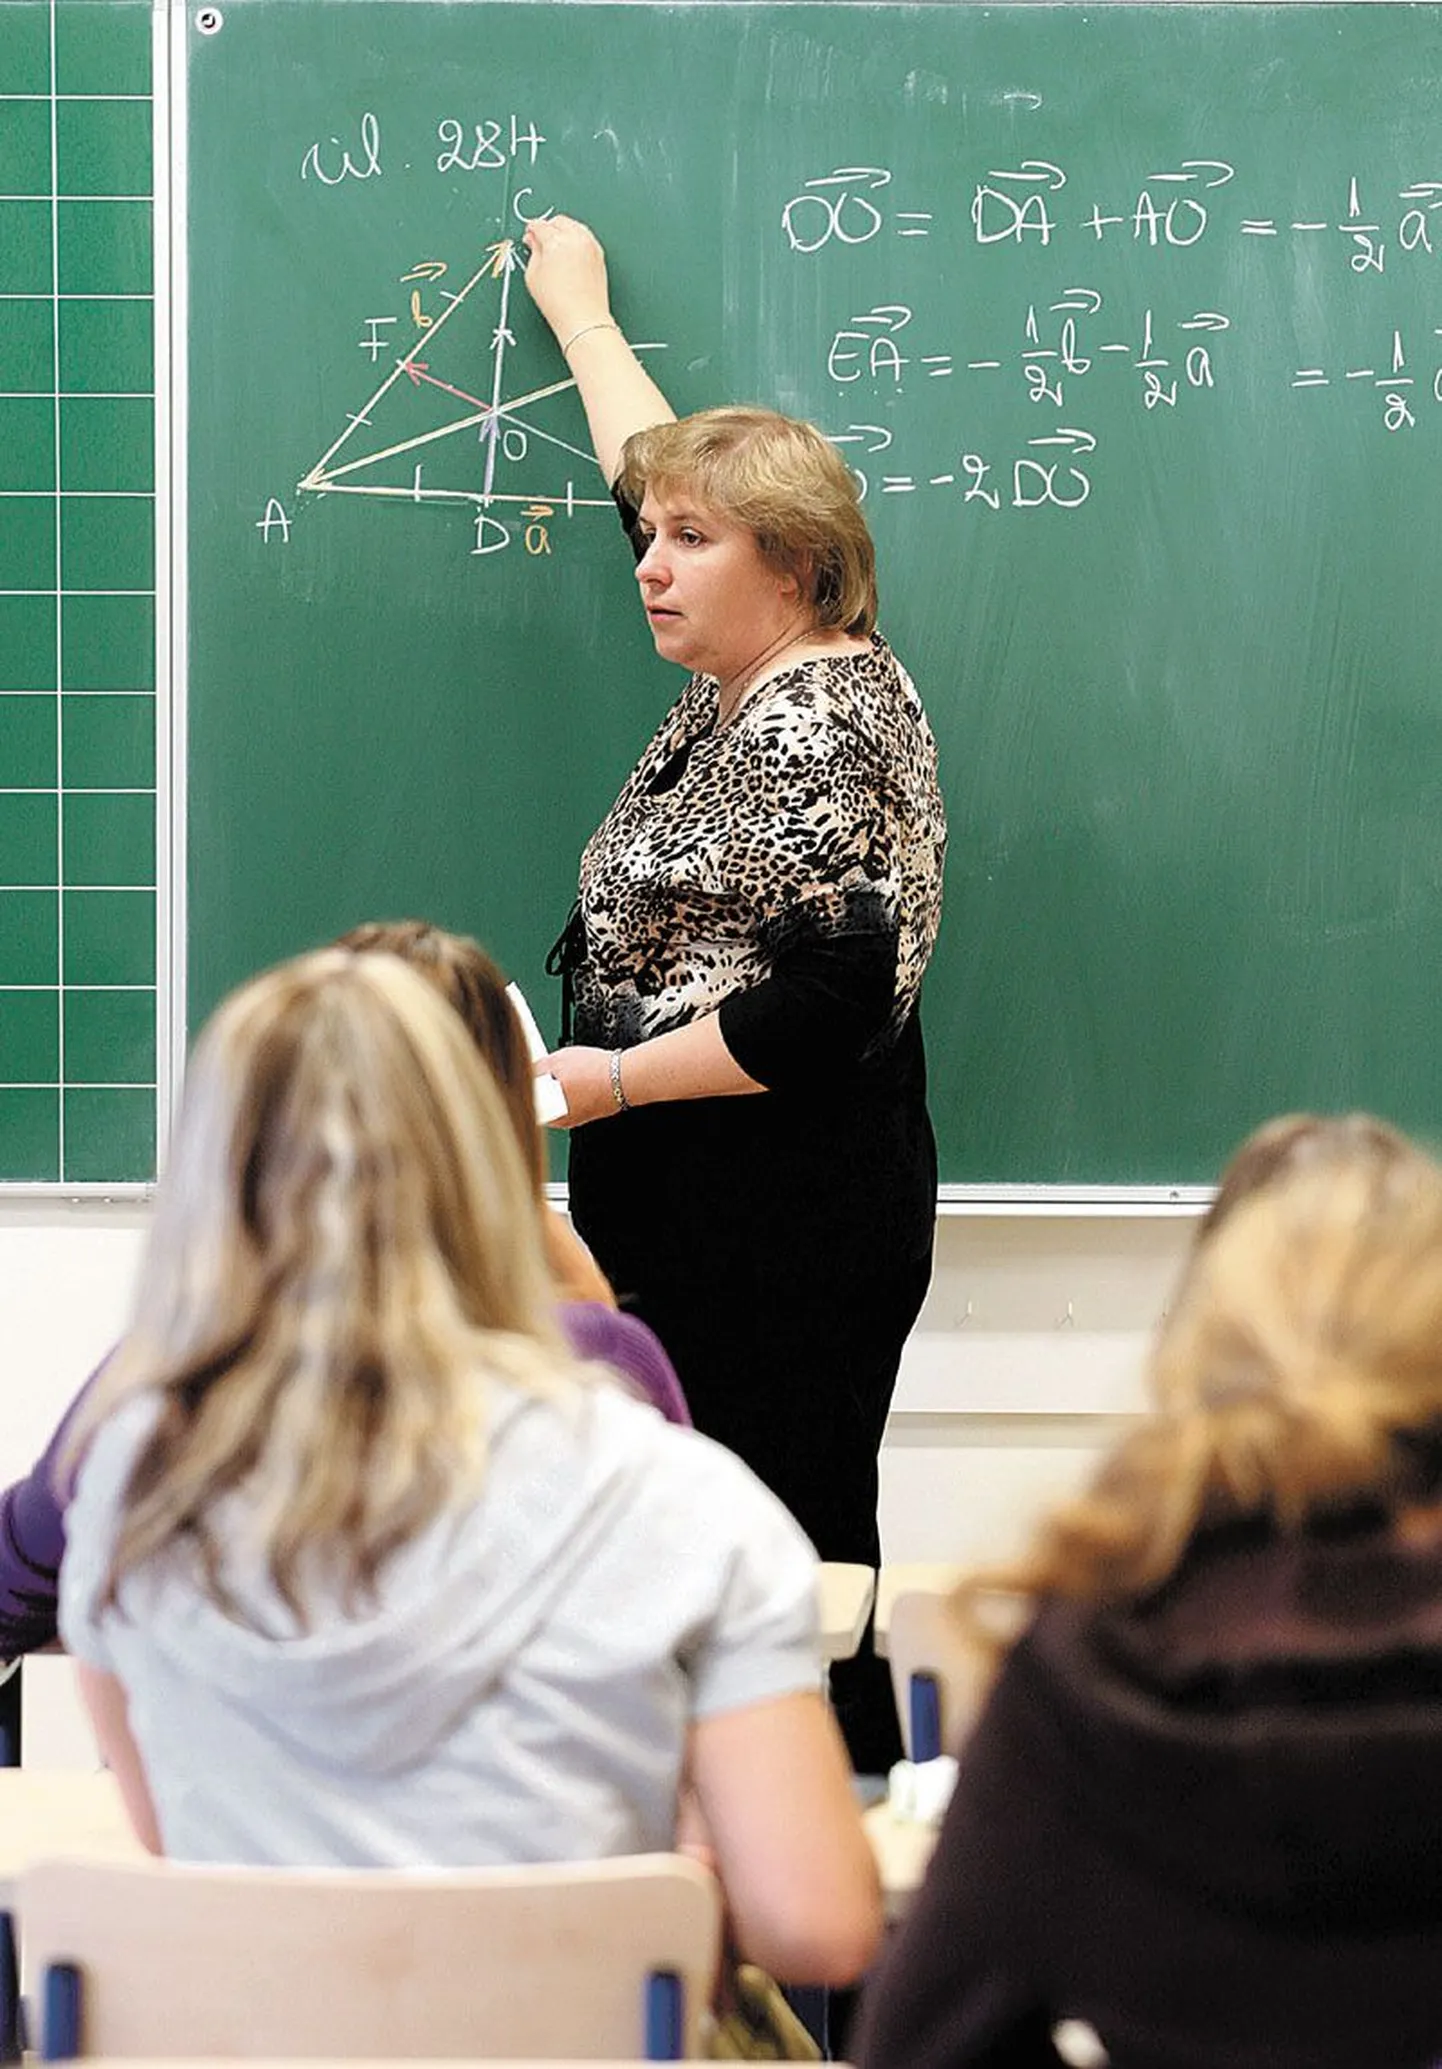 Jüri gümnaasiumi matemaatikaõpetaja Kersti Kaldmäe leiab, et enamik õpilasi on toredad ja          teadmishimulised, kuid 7.–9. klassis on alati üks-kaks last, kellel on probleeme tunnikäitumisega ning kes segavad ka teiste õppimist